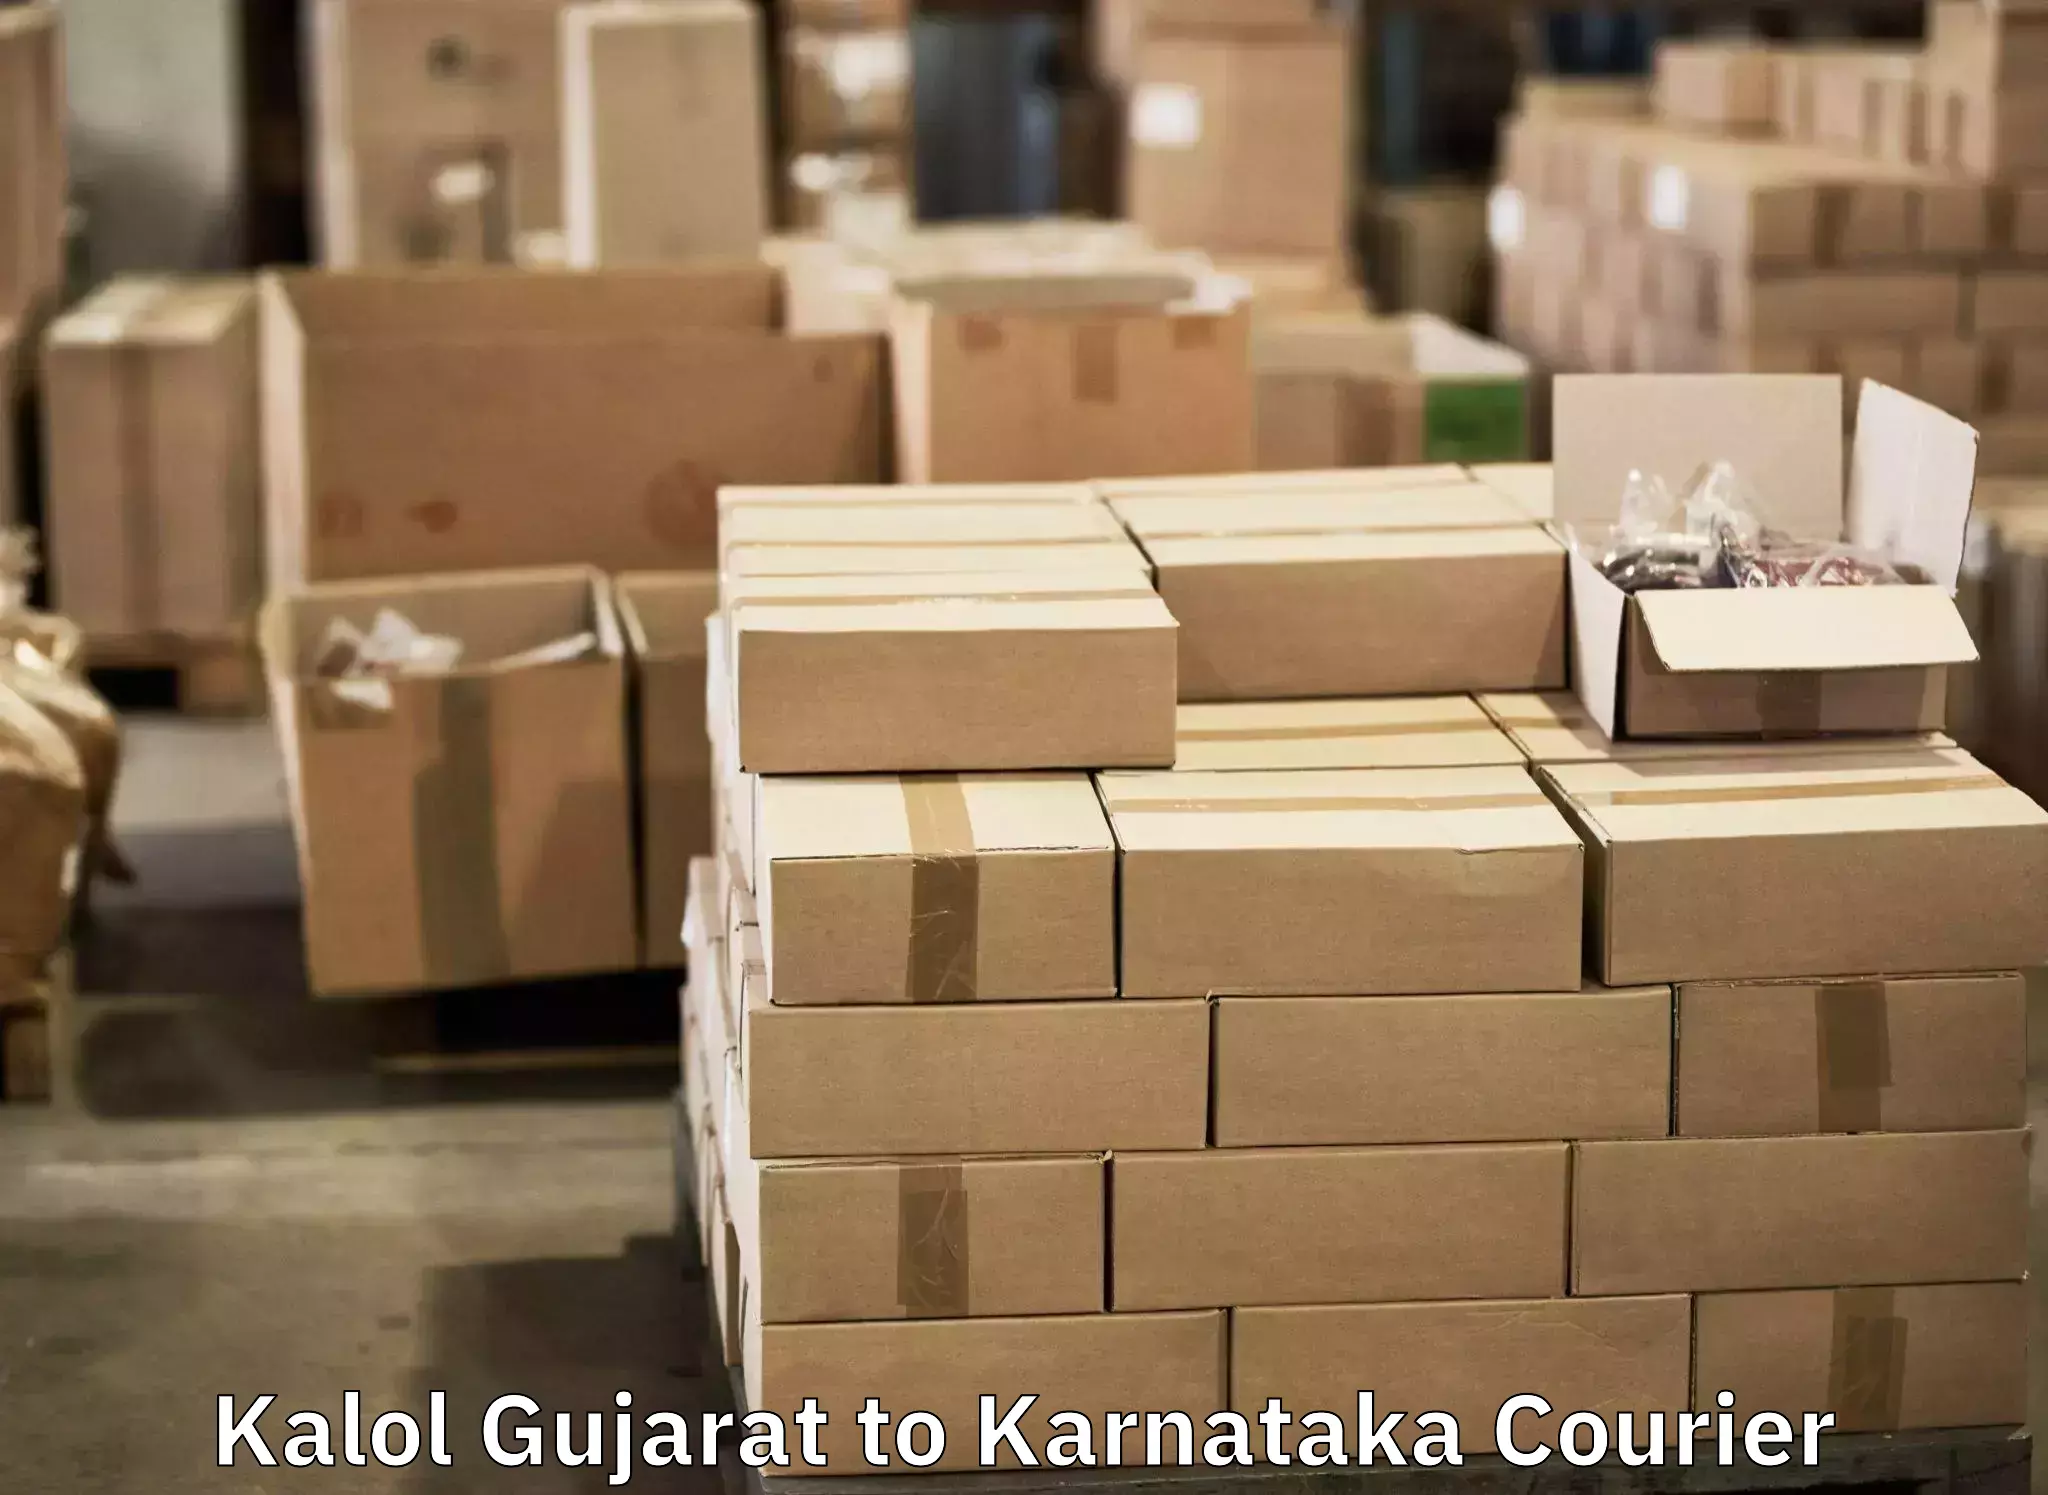 Luggage dispatch service Kalol Gujarat to Yellapur